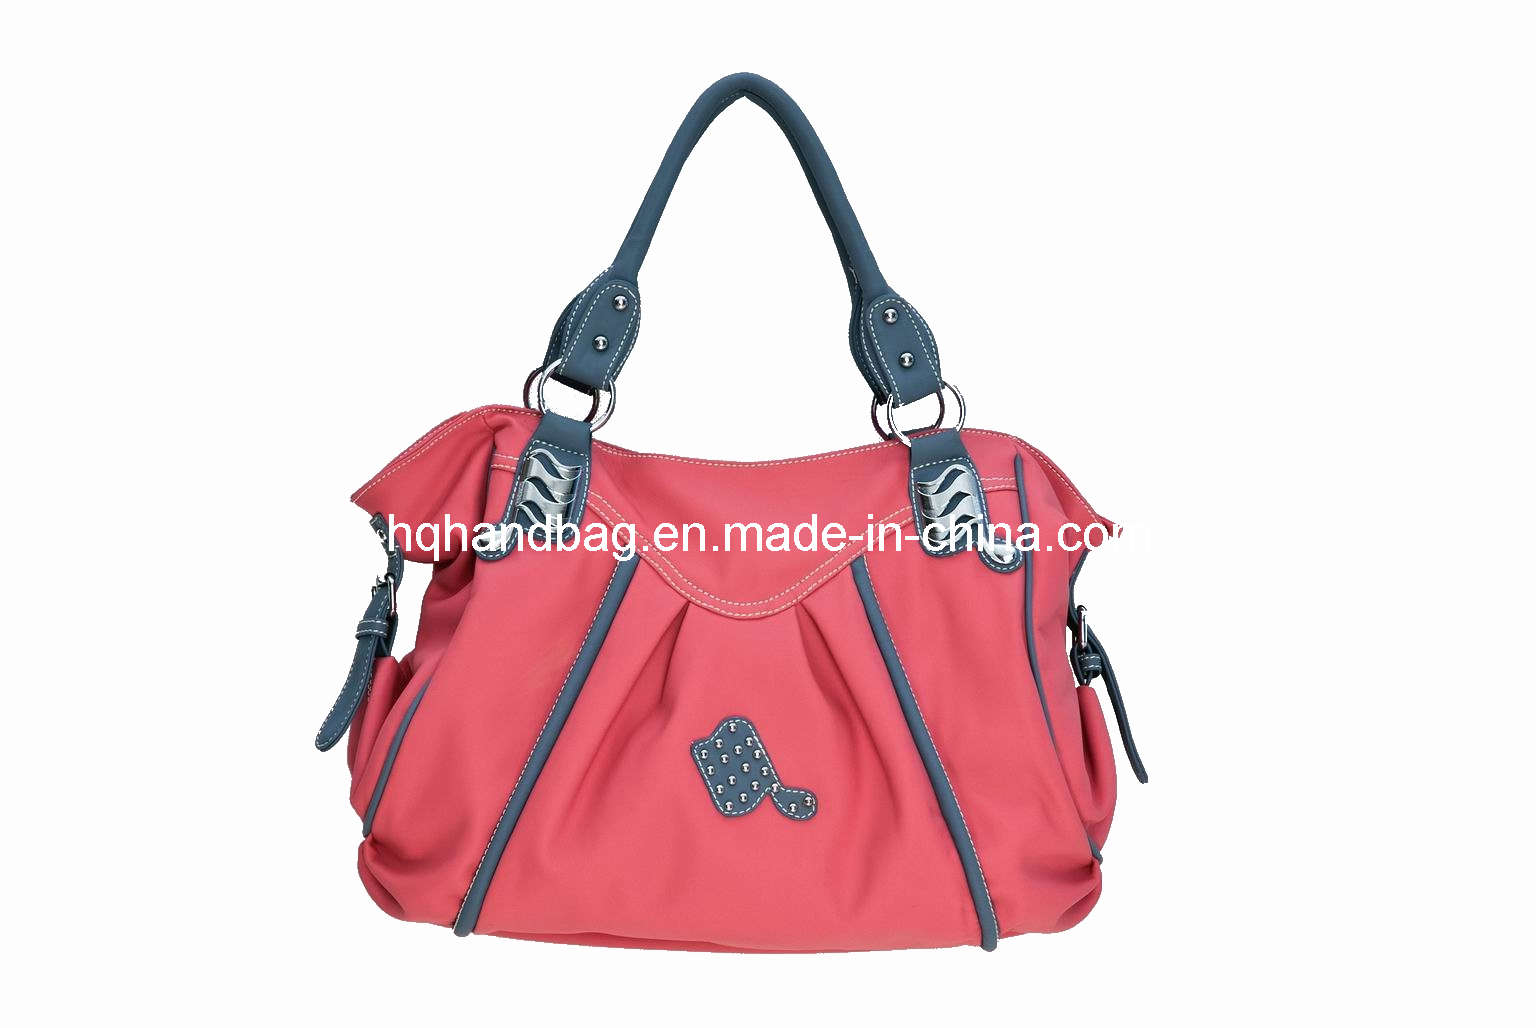 Red PU Ladies' Fashion Handbag (HQ-M021)